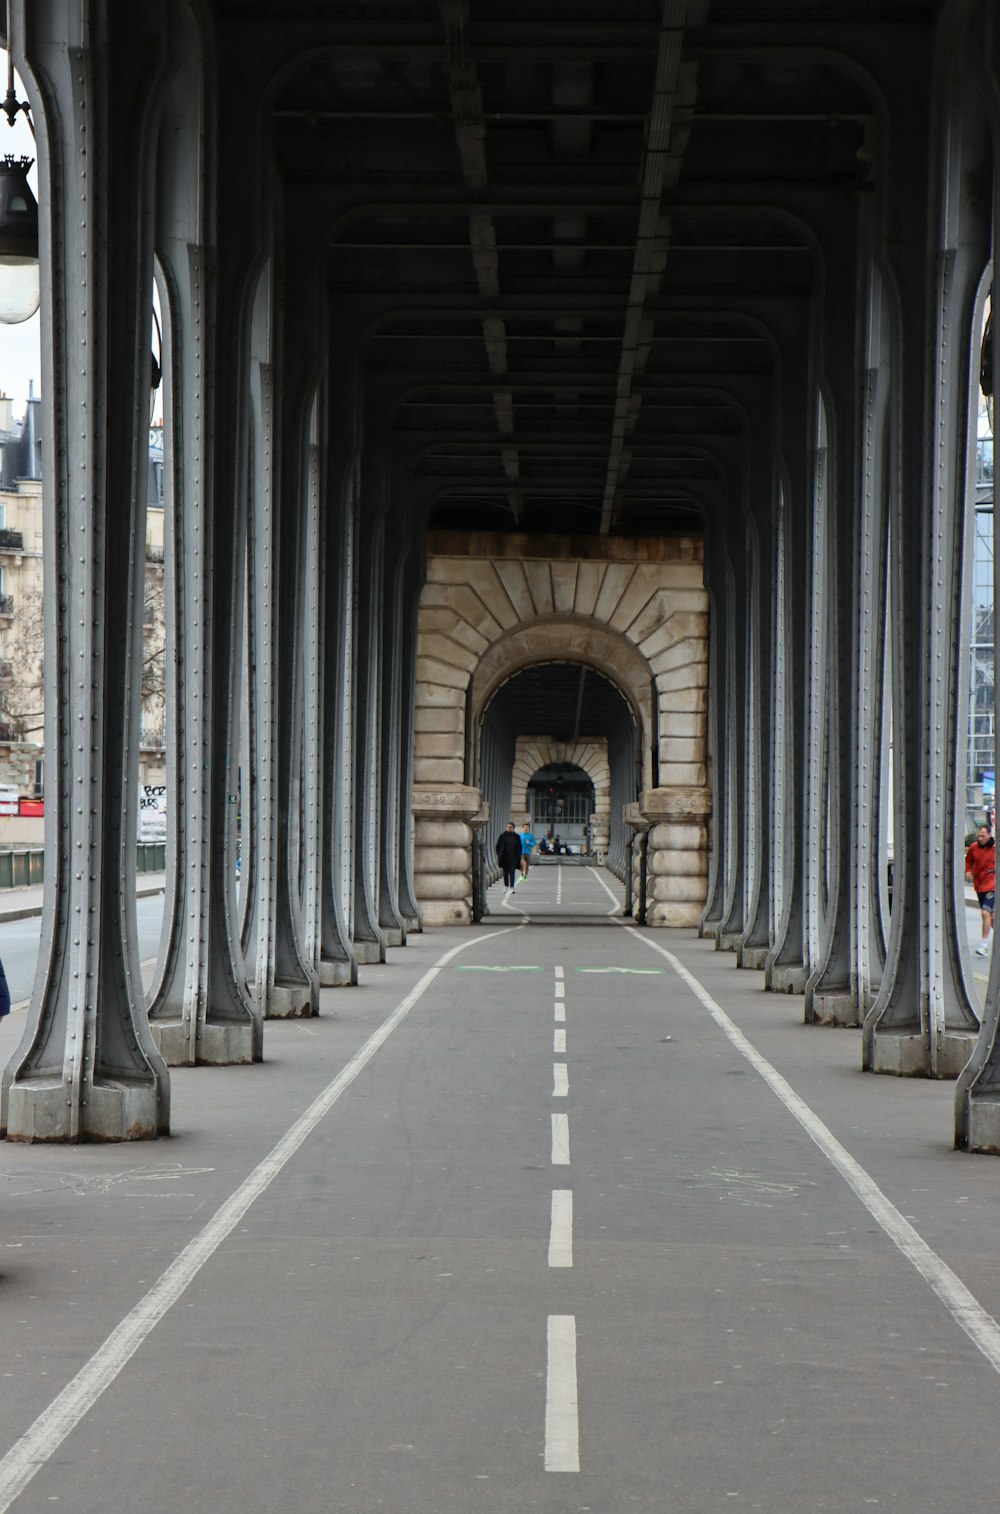 a person riding a bike down a street under a bridge